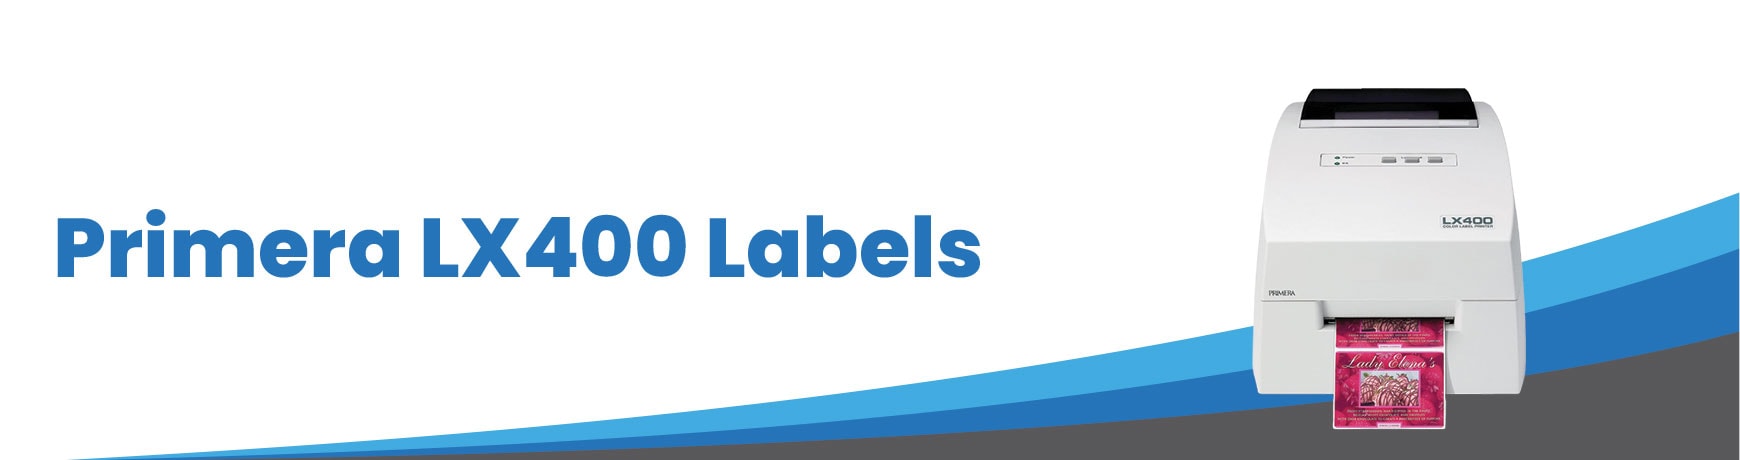 Primera LX400 Labels